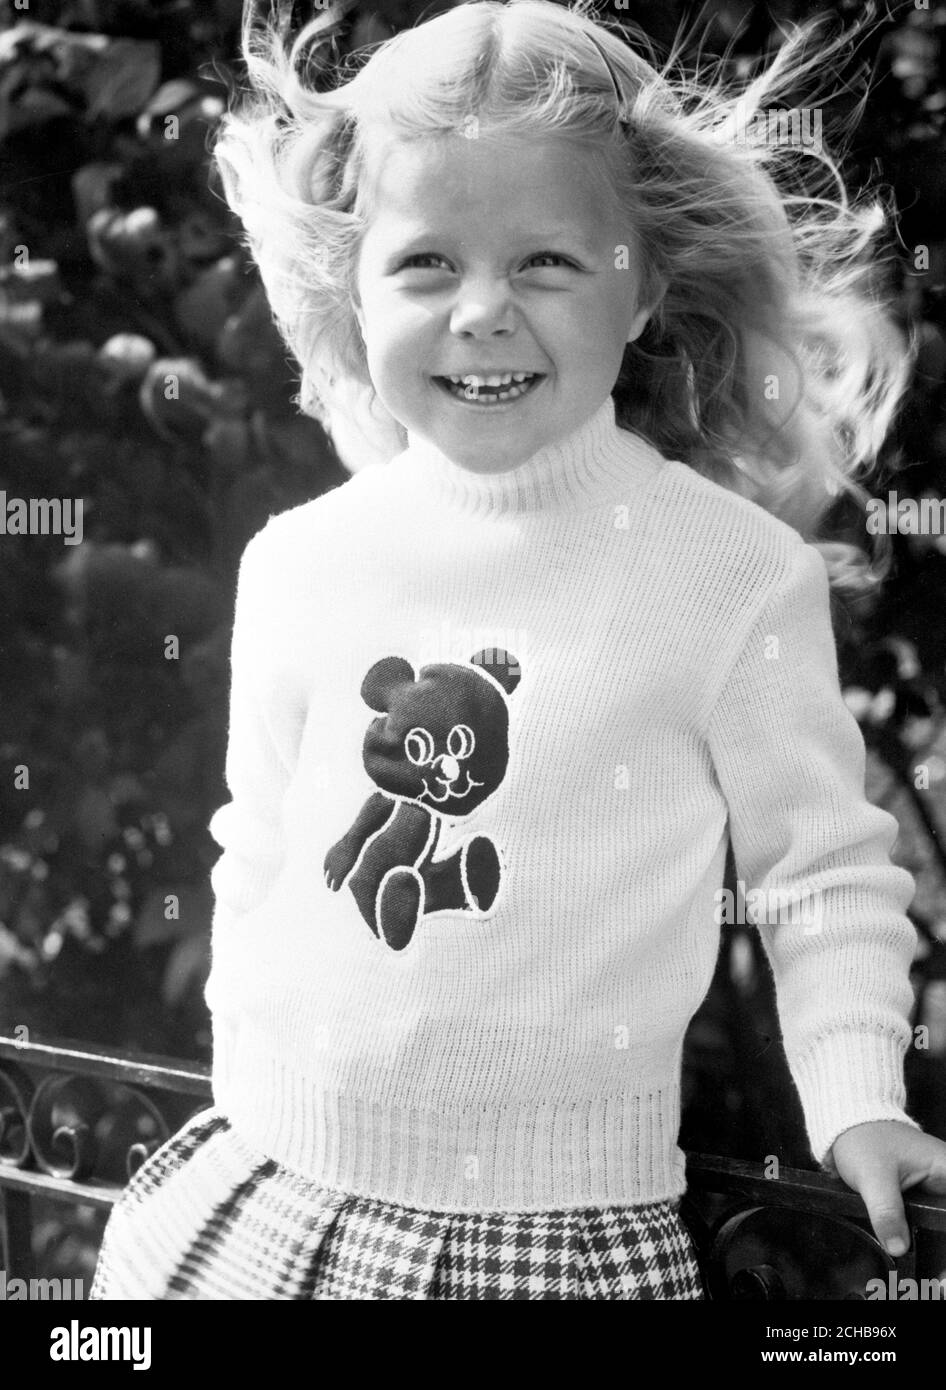 Un jeune modèle porte un pull avec un motif ours en peluche, qui grince lorsqu'il est pressé, disponible auprès de British Home Stores. Banque D'Images